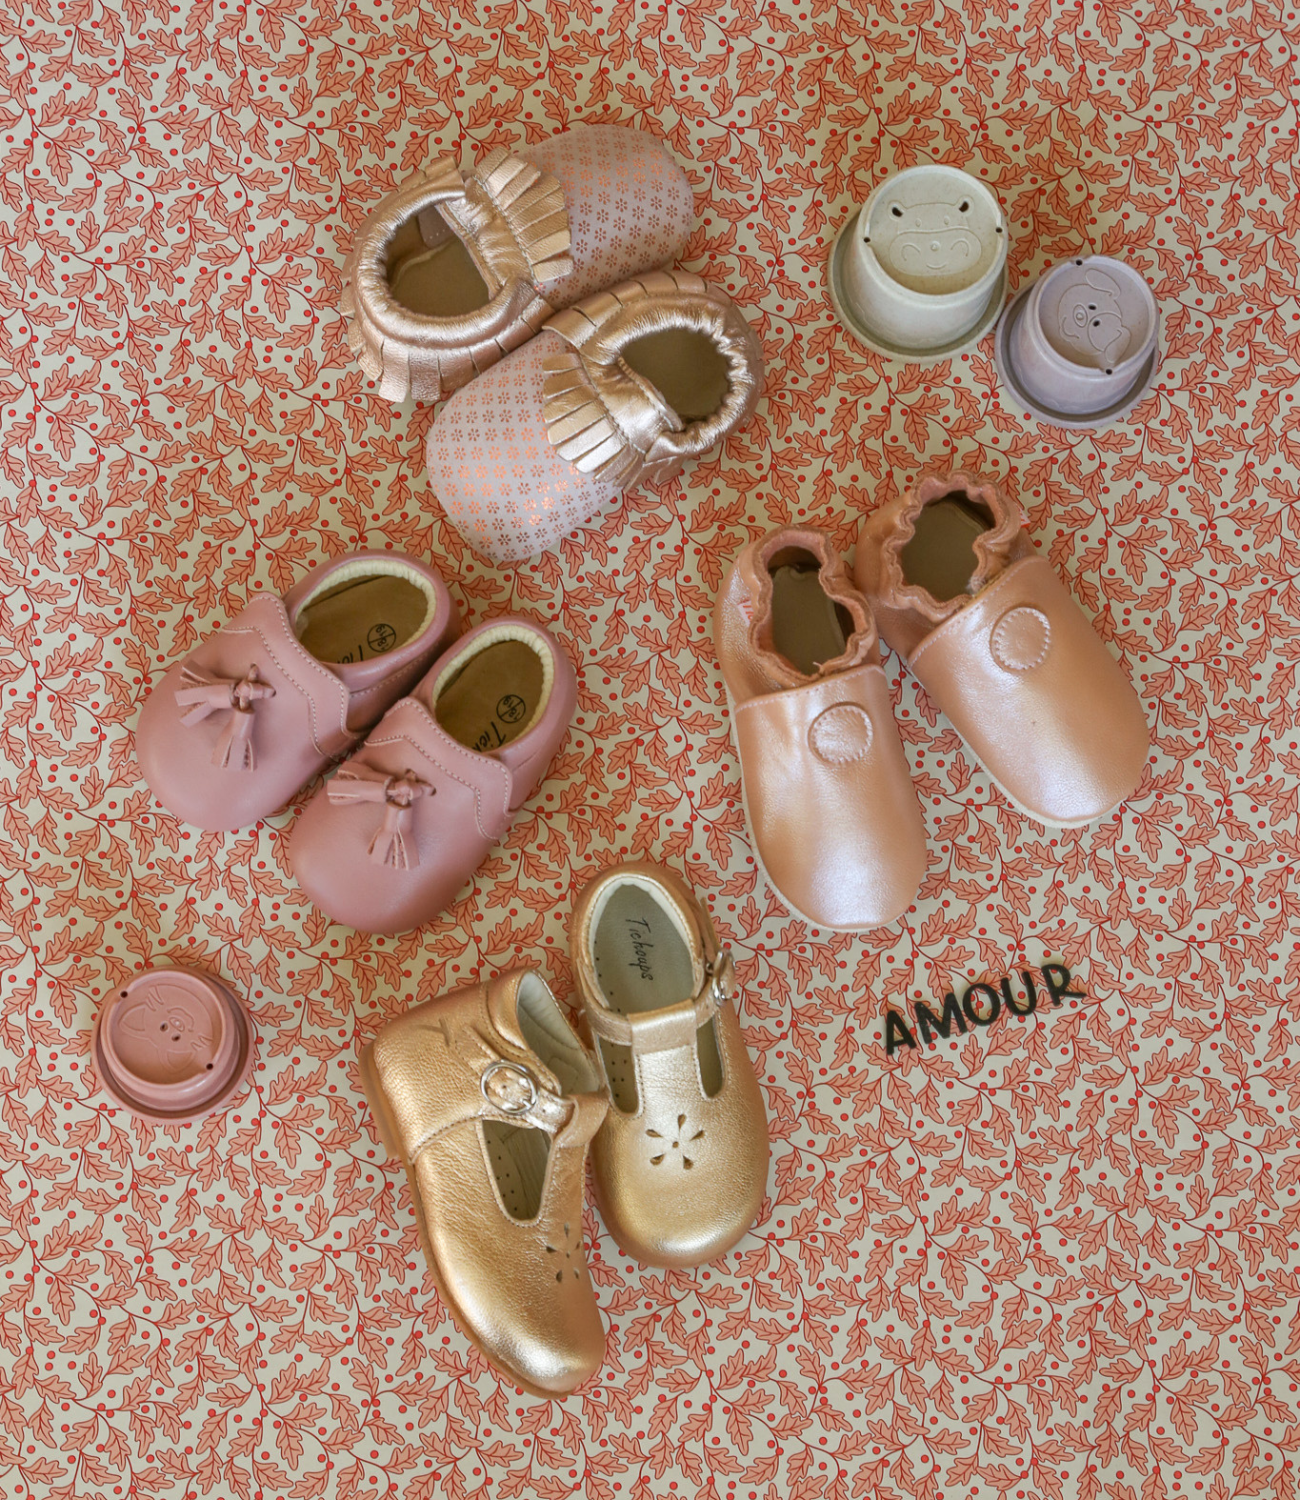 Chaussure bébé en cuir souple - Petits Moussaillons